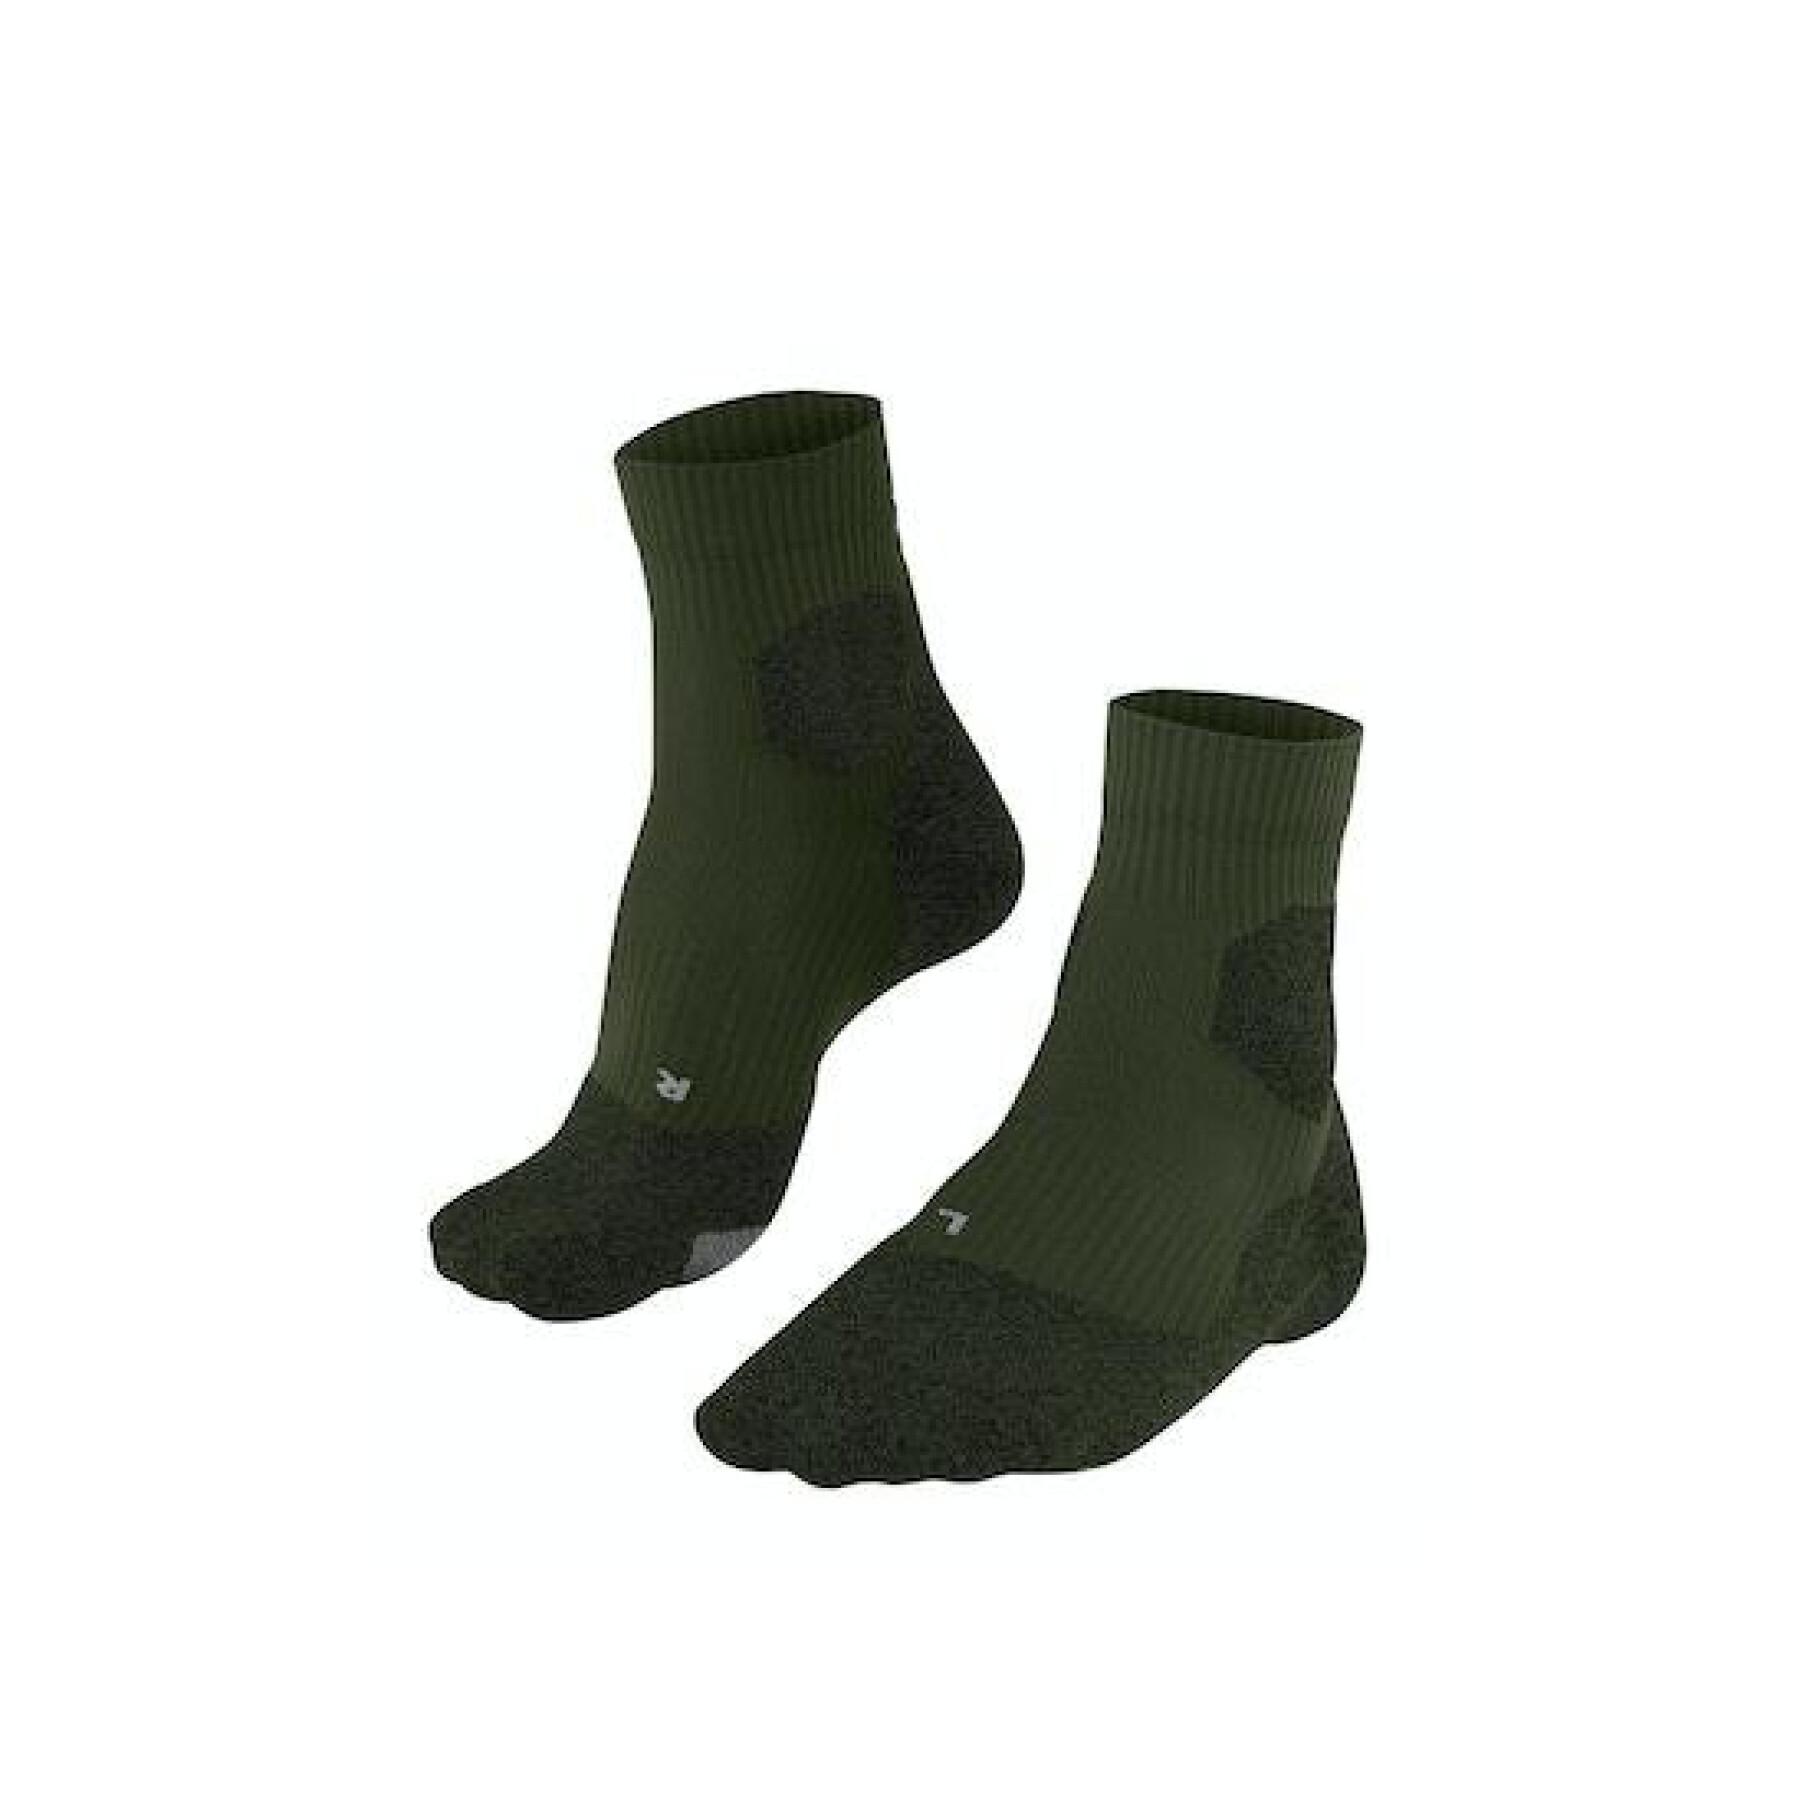 Socks Falke RU Trail Grip - Socks - Men's wear - Rallystory wear